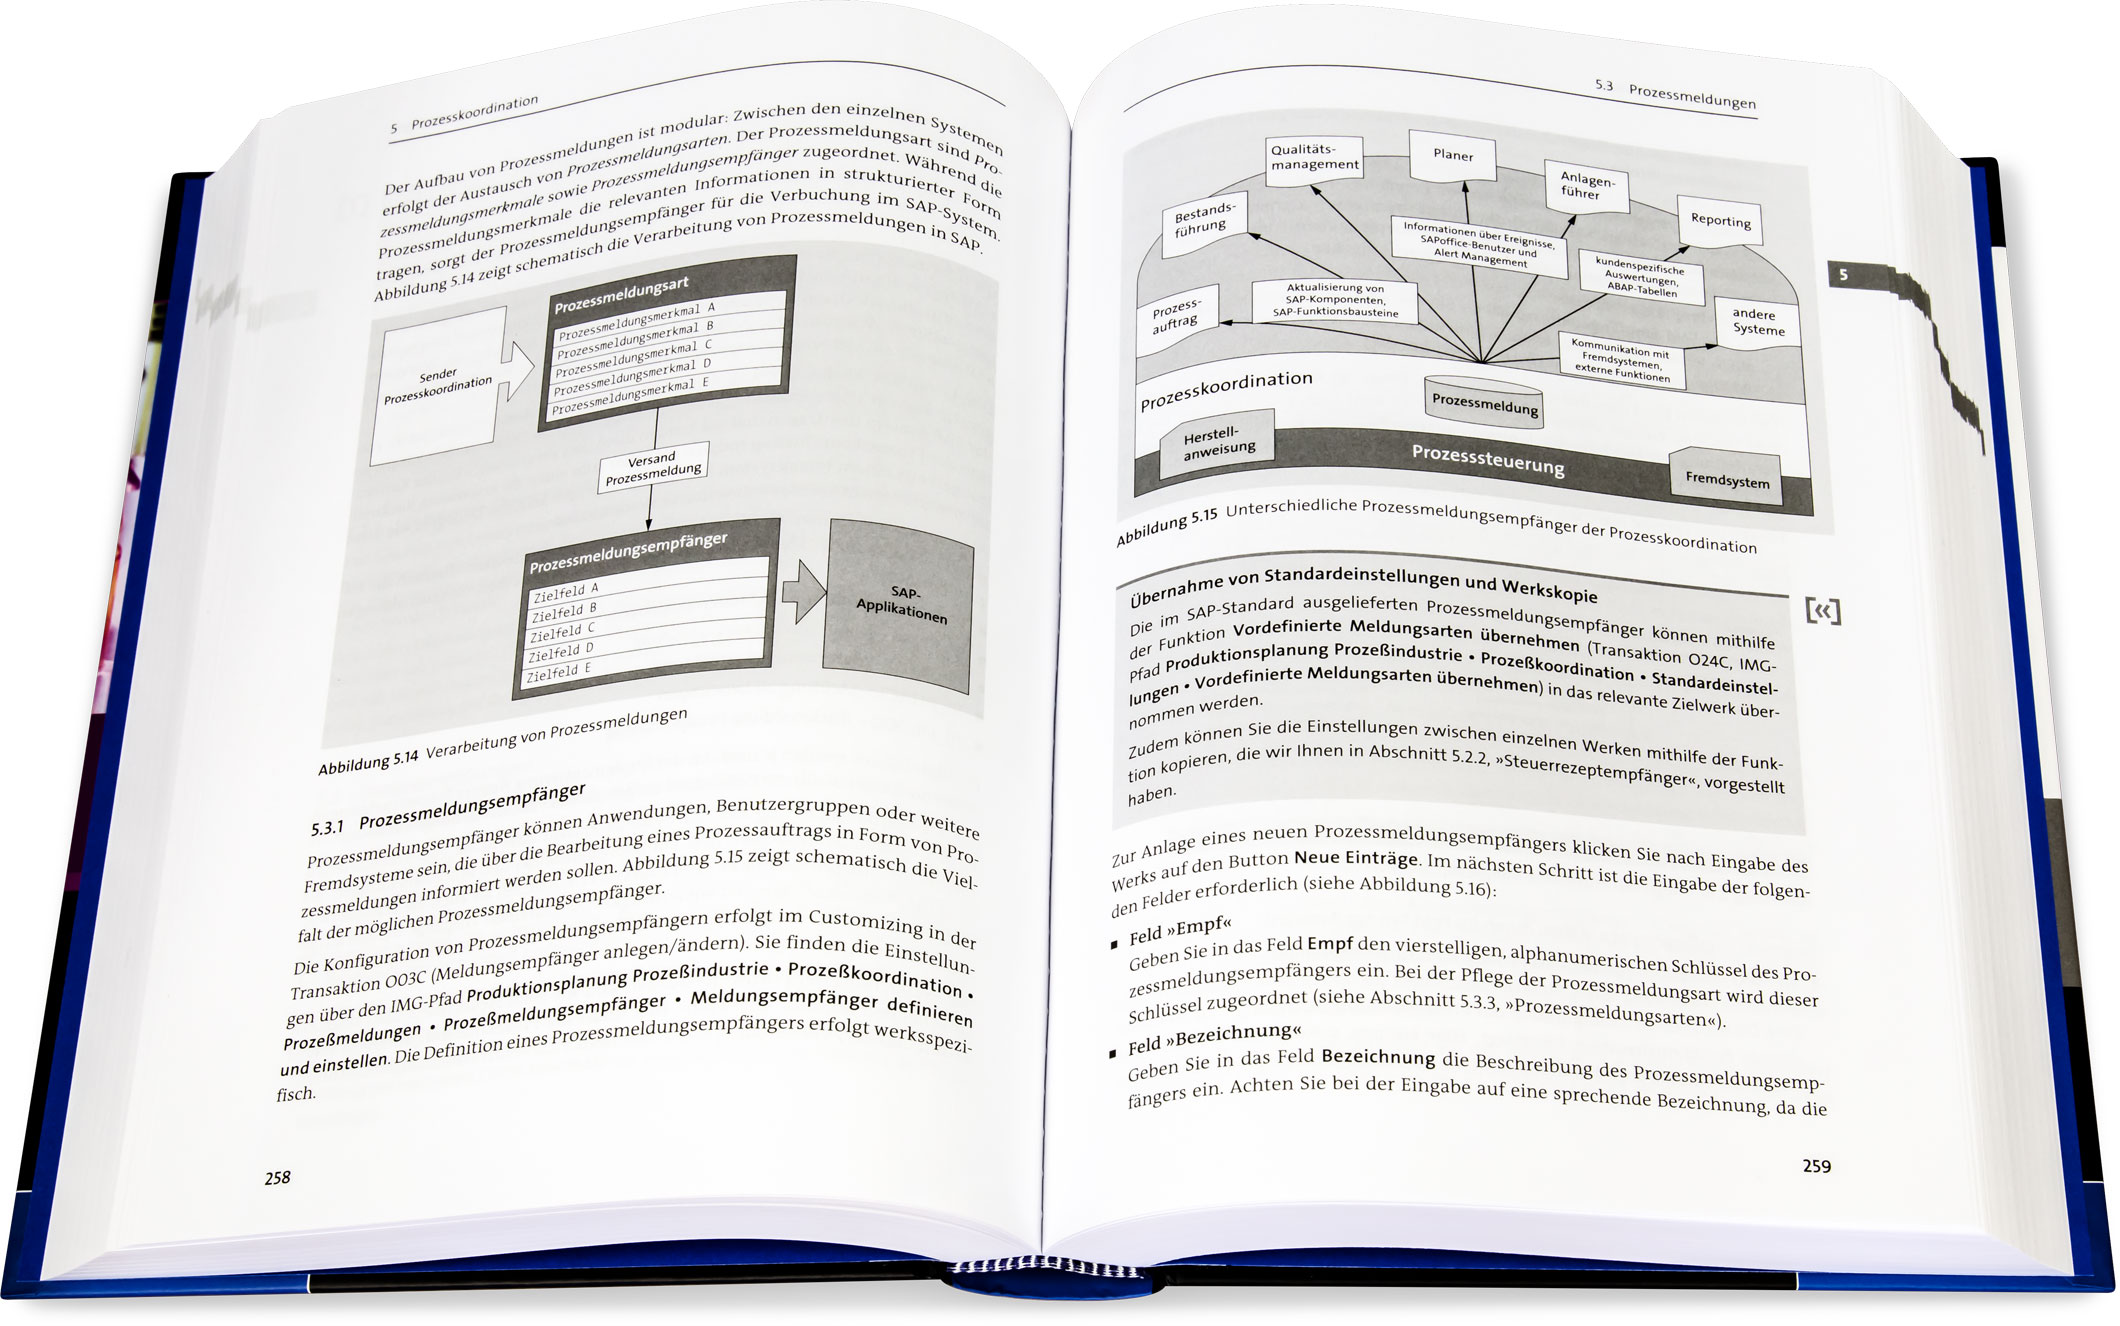 Blick ins Buch: Produktionsplanung mit SAP S/4HANA in der Prozessindustrie